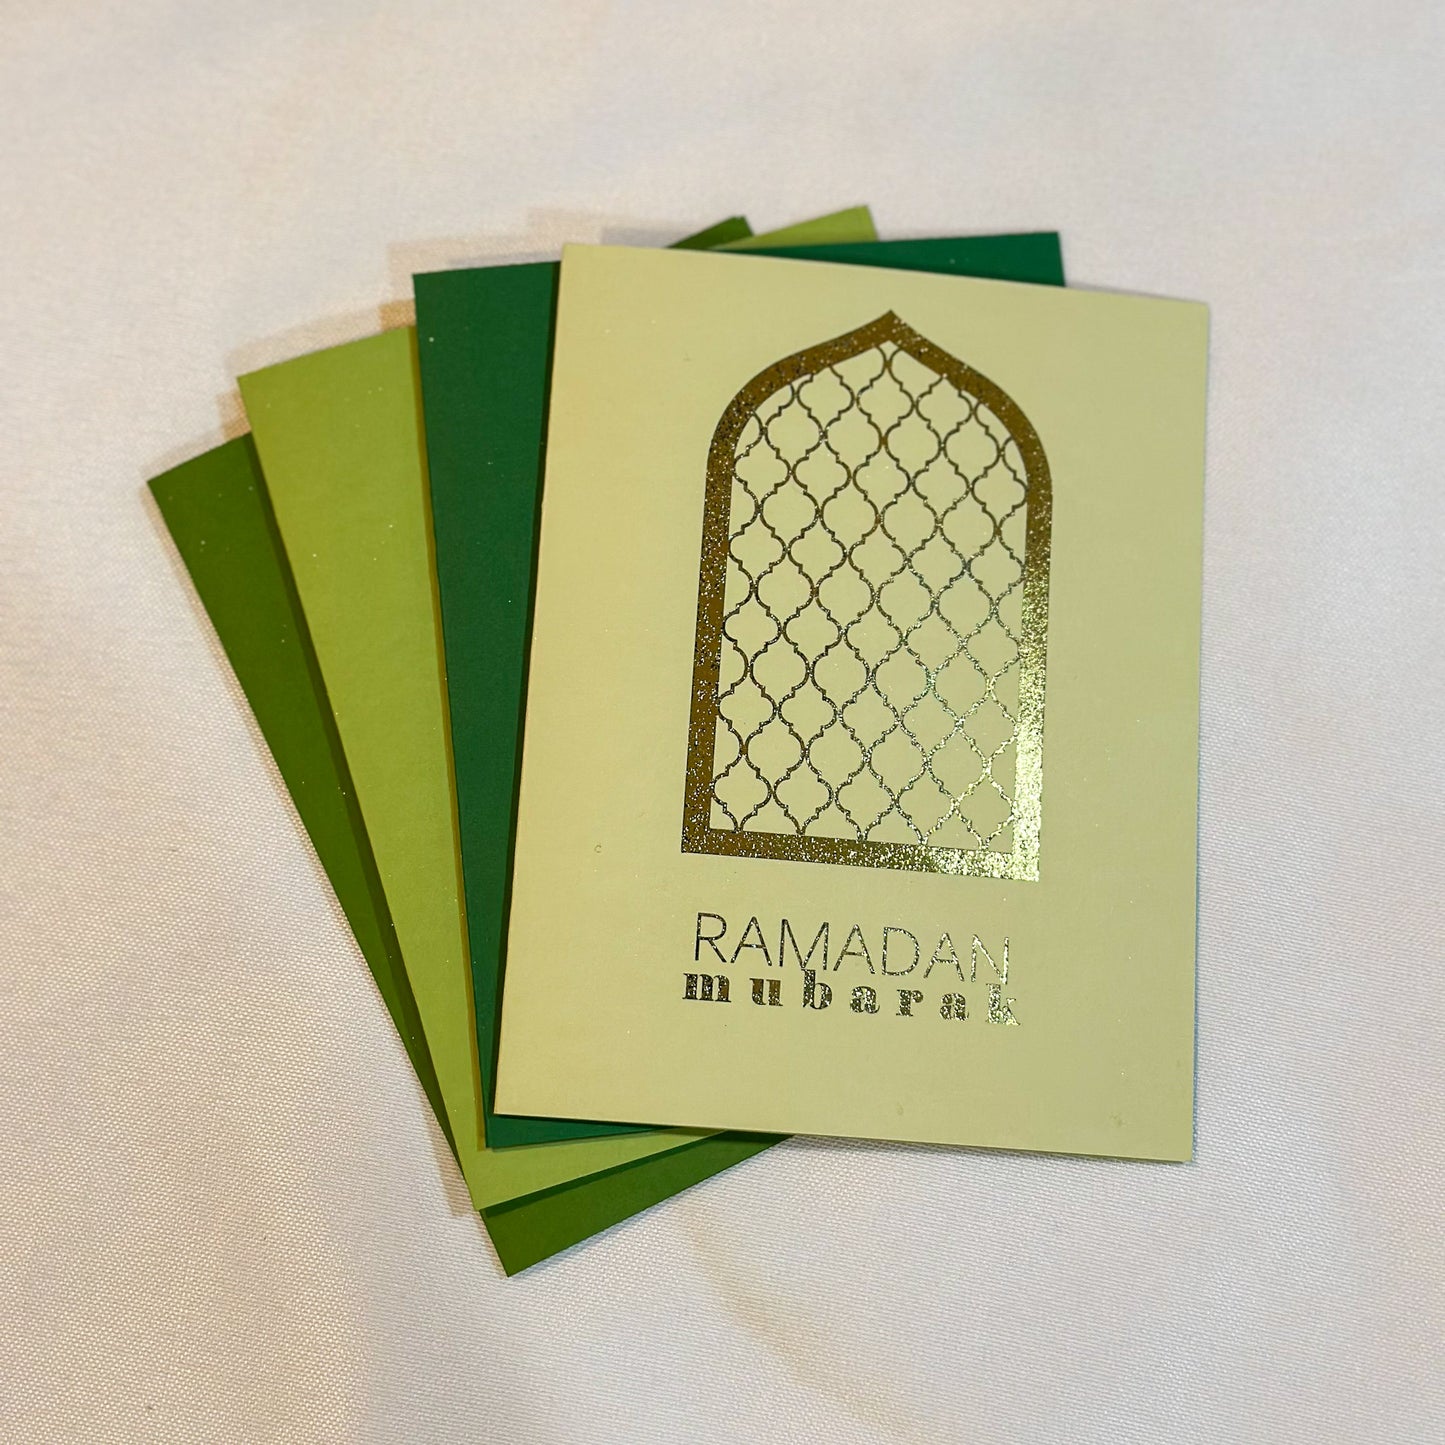 Ramadan Prayer Mat Greeting Cards